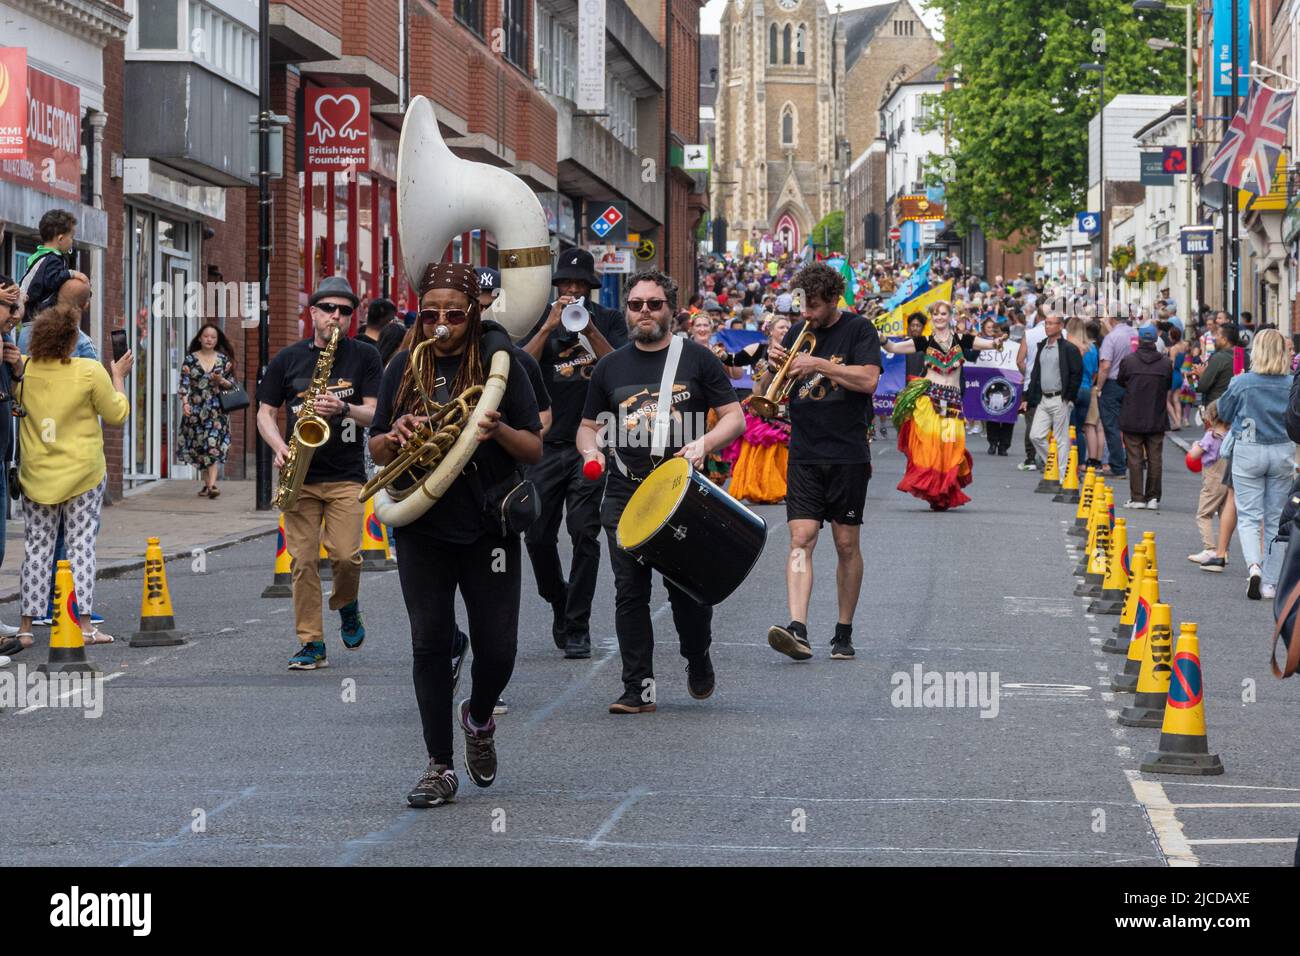 Le groupe de cuivres a appelé Brassbound, musiciens, prenant part à la Grand Parade à Victoria Day, un événement annuel à Aldershot, Hampshire, Angleterre, Royaume-Uni Banque D'Images